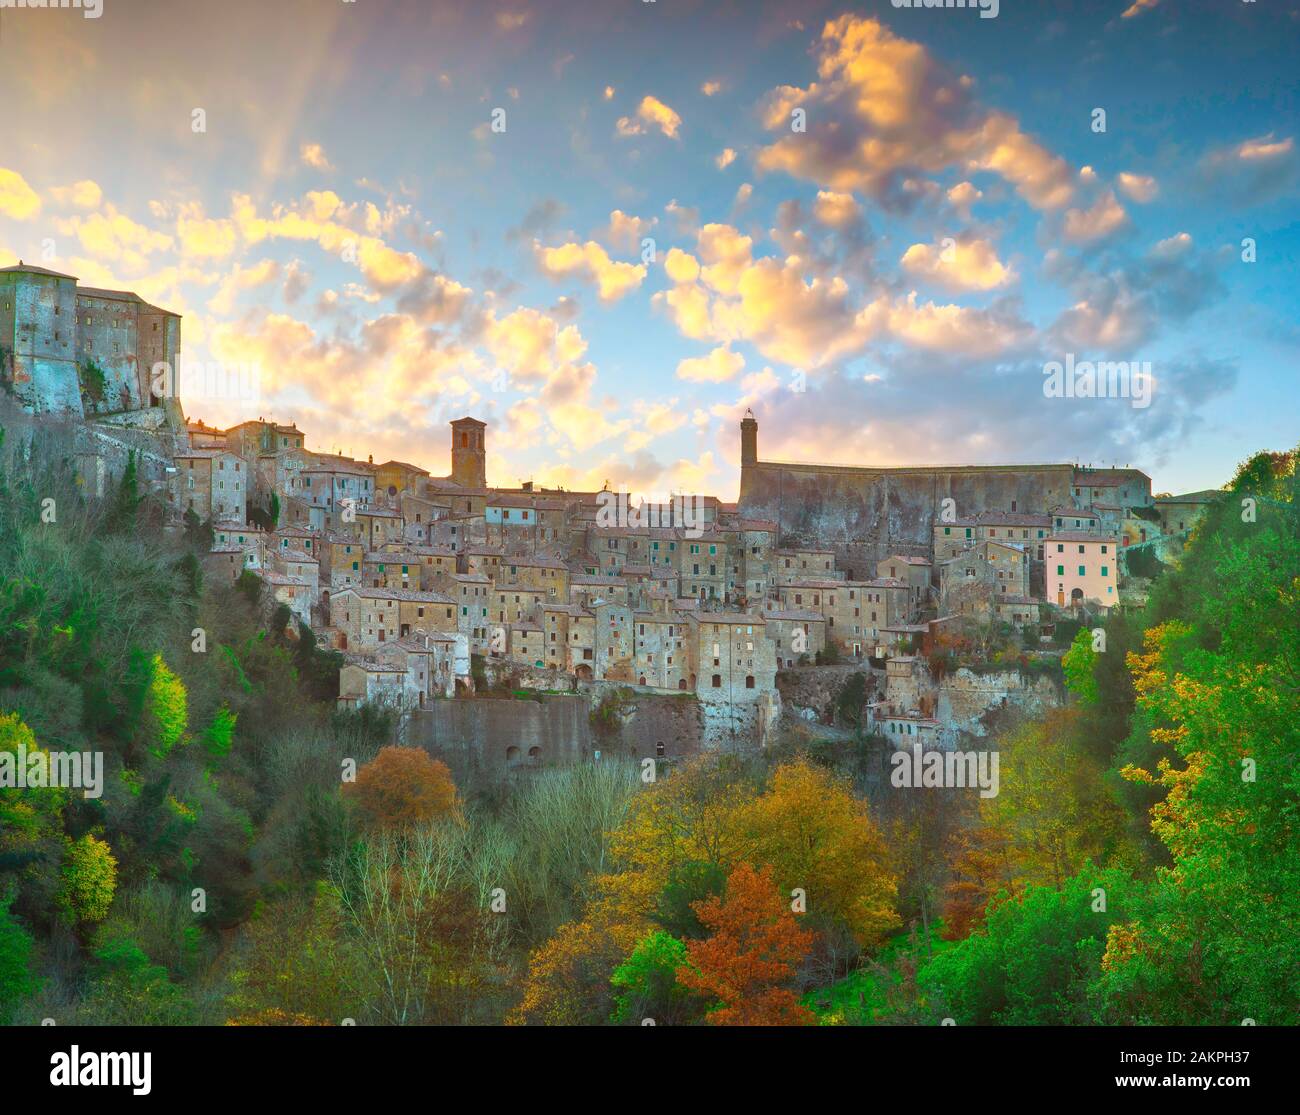 Toscana, Sorano localidad medieval de toba colina rocosa. Panorama del atardecer. Italia, Europa. Foto de stock